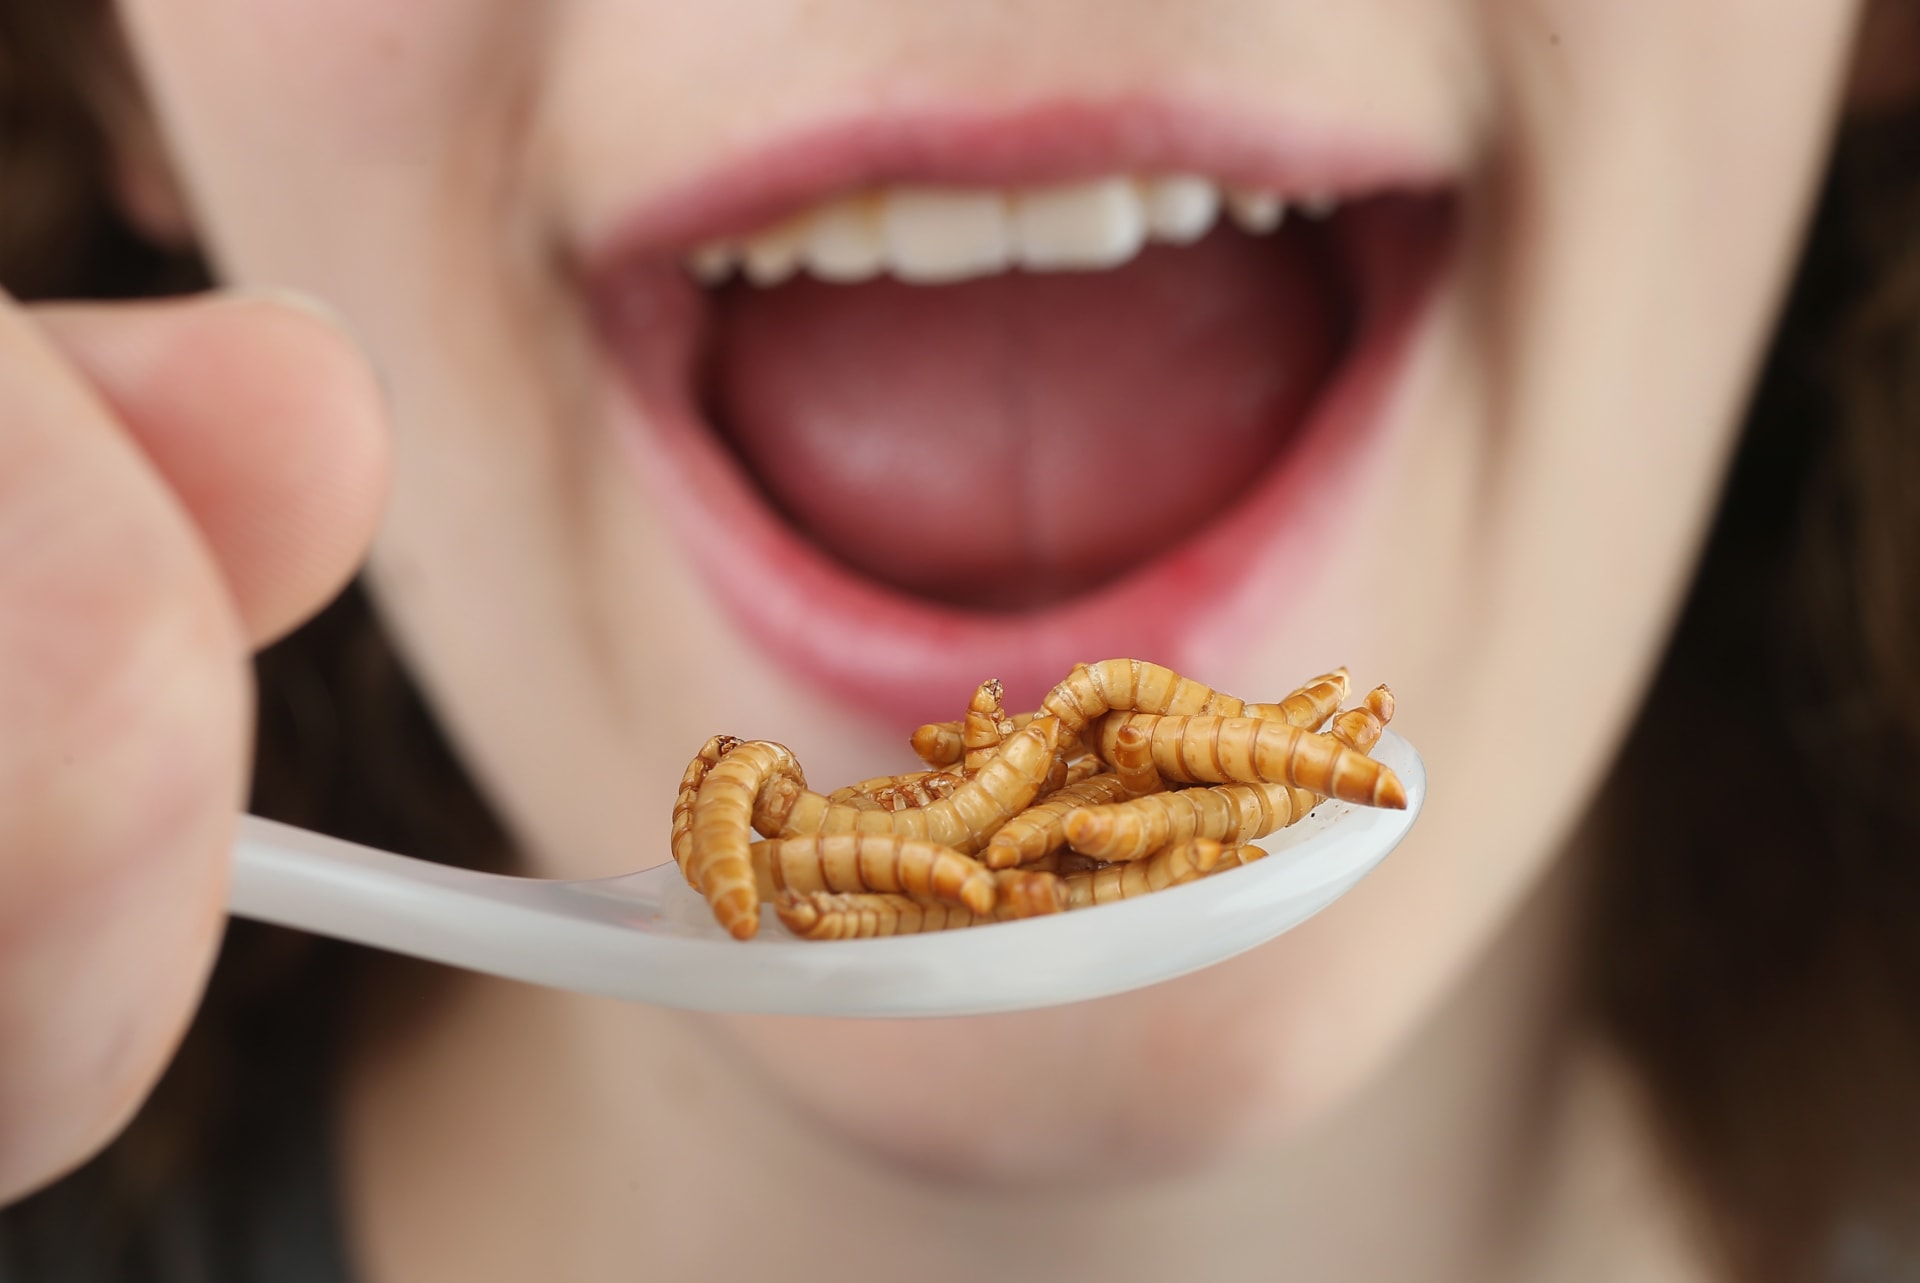 الحشرات.. الطعام الذي يمكنه إطعام الكوكب وربما الحفاظ عليه